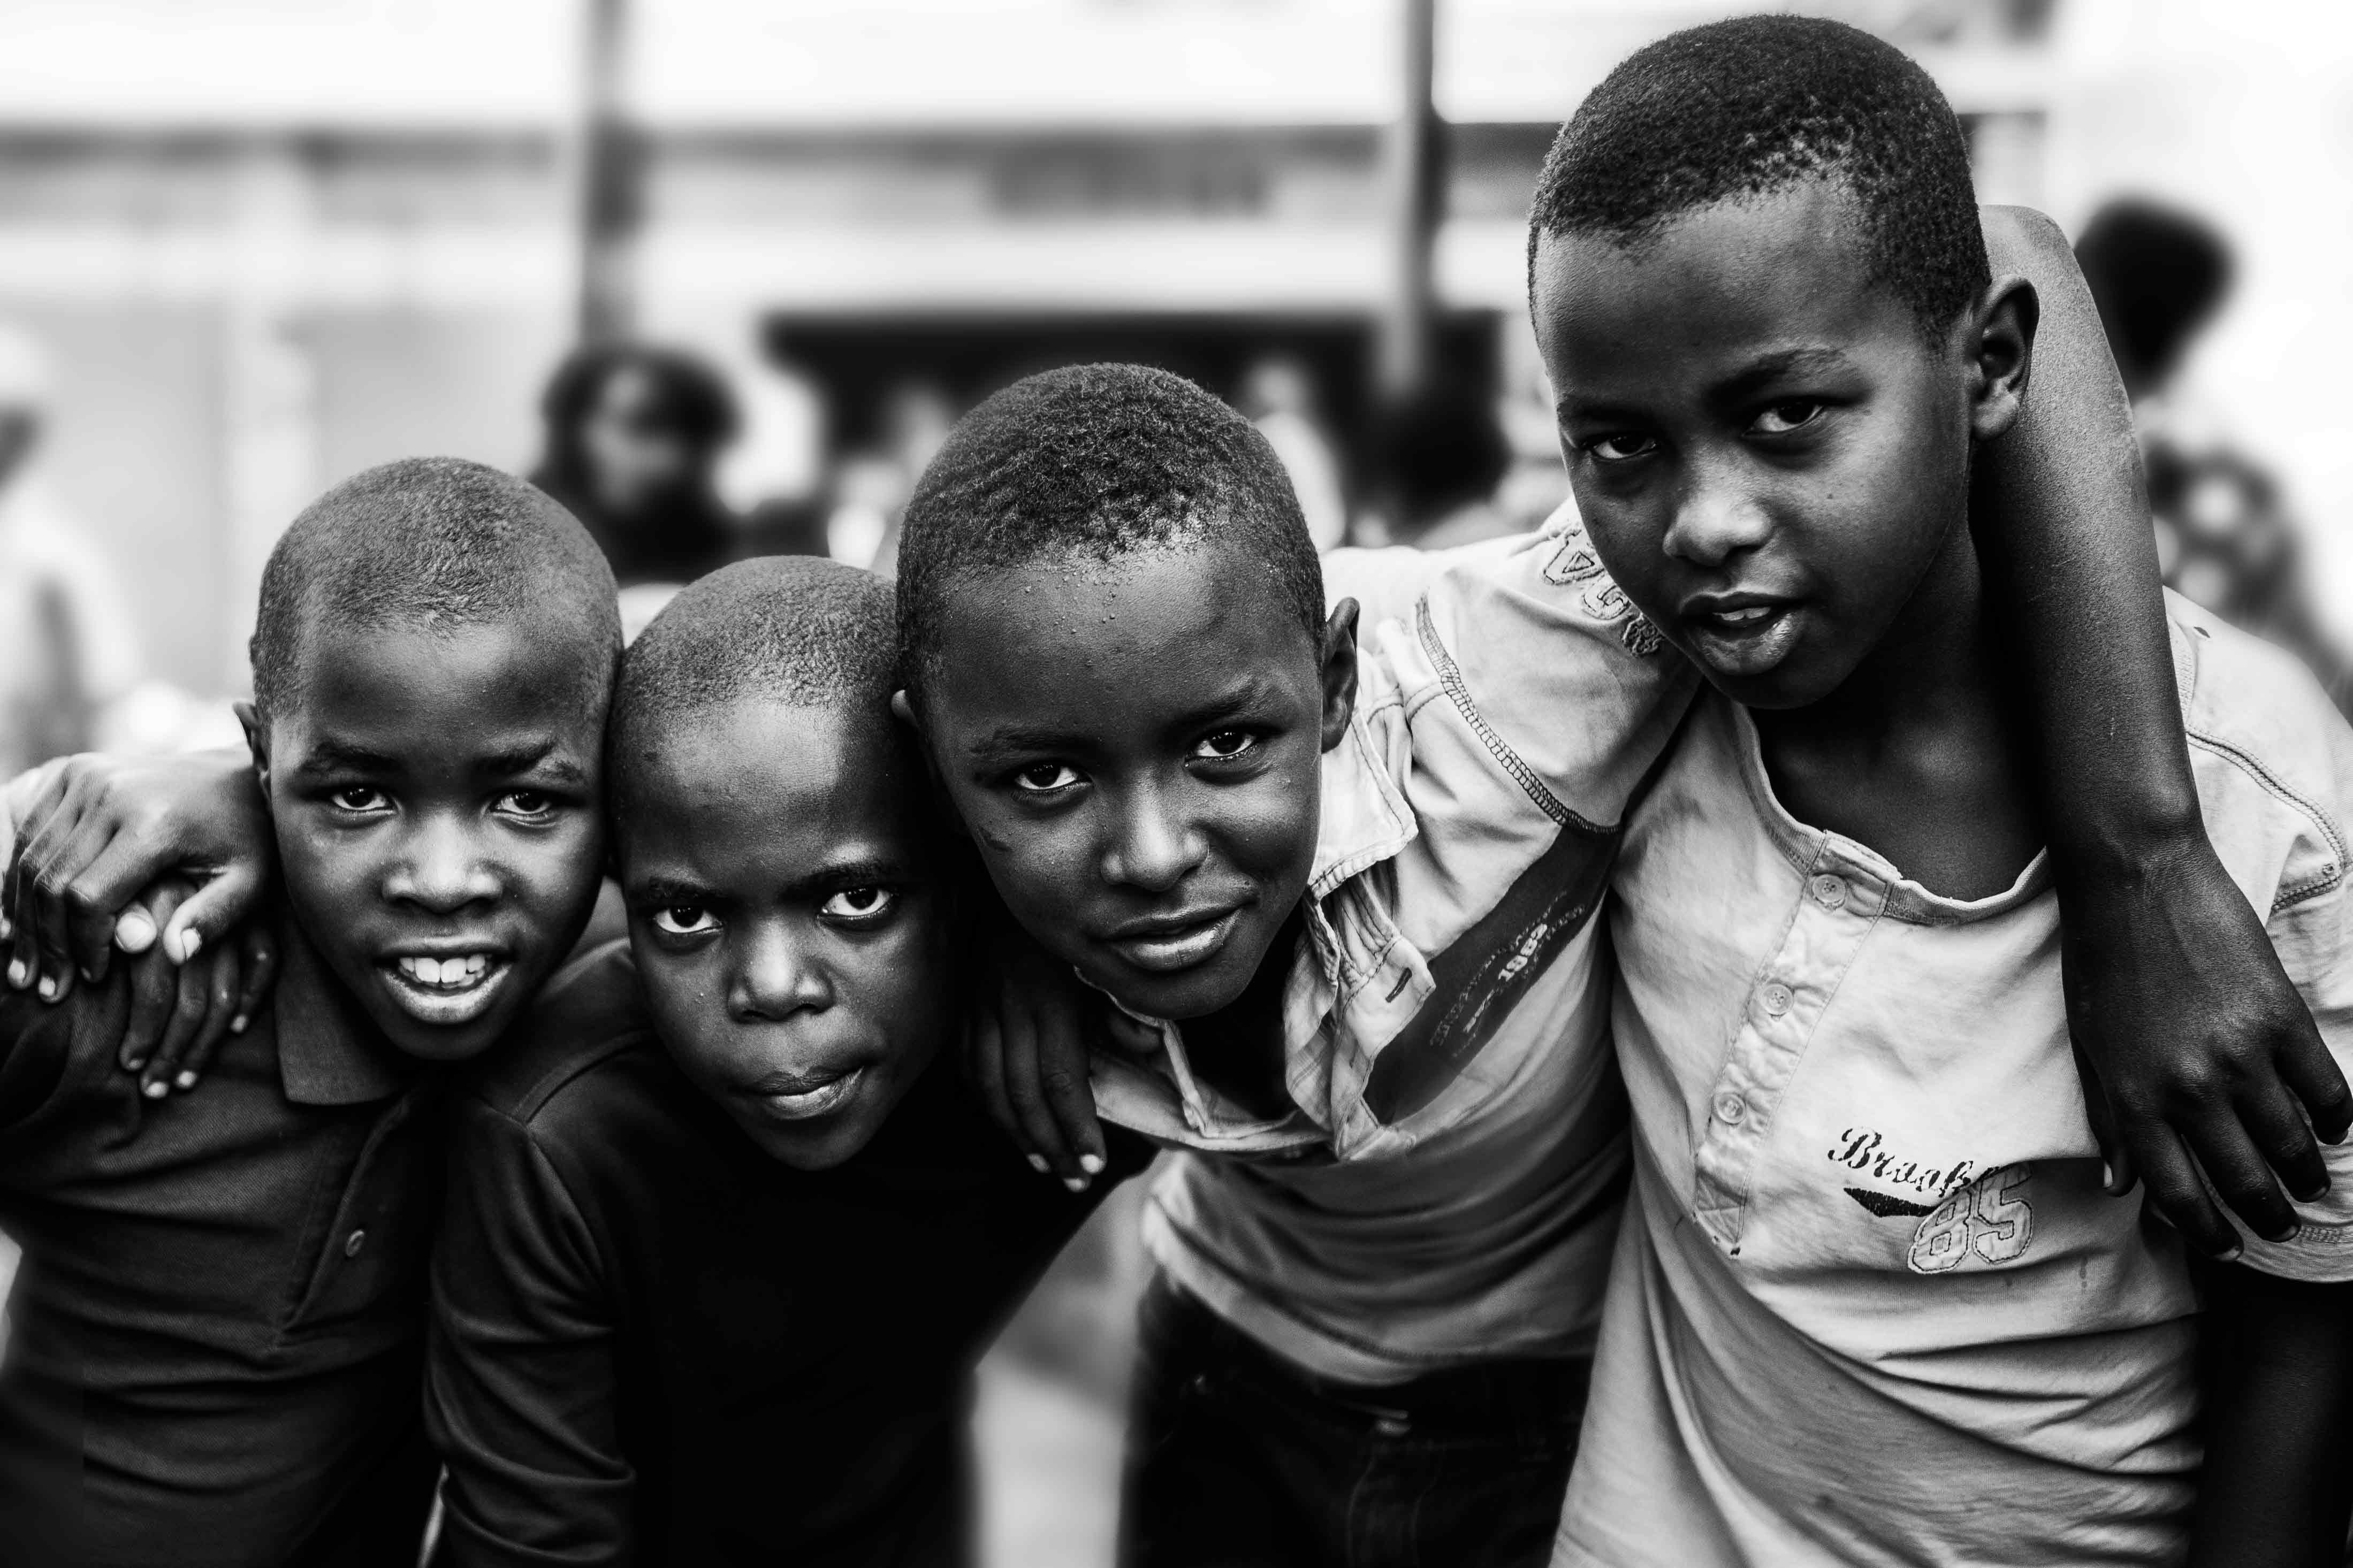 Faces of Rwanda | 7